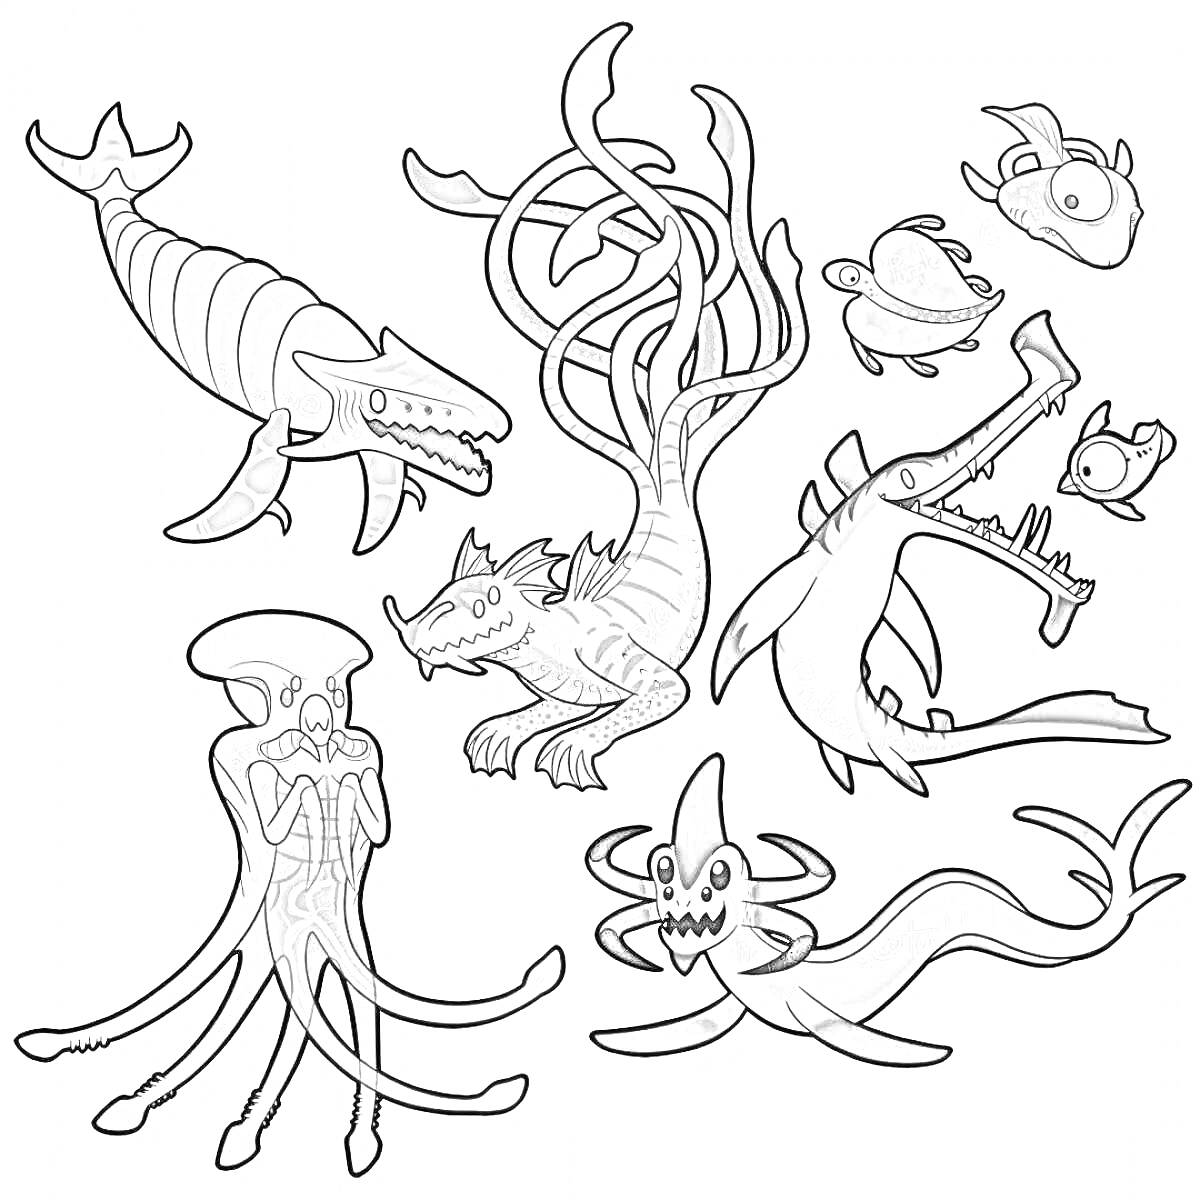 Раскраска Подводные существа, включая рыбу-левиафана, морского дракона, кустарникового морского существа, акулы с прорезями, рыбы с наростами, медузы, рыбы-нагини и осьминога.